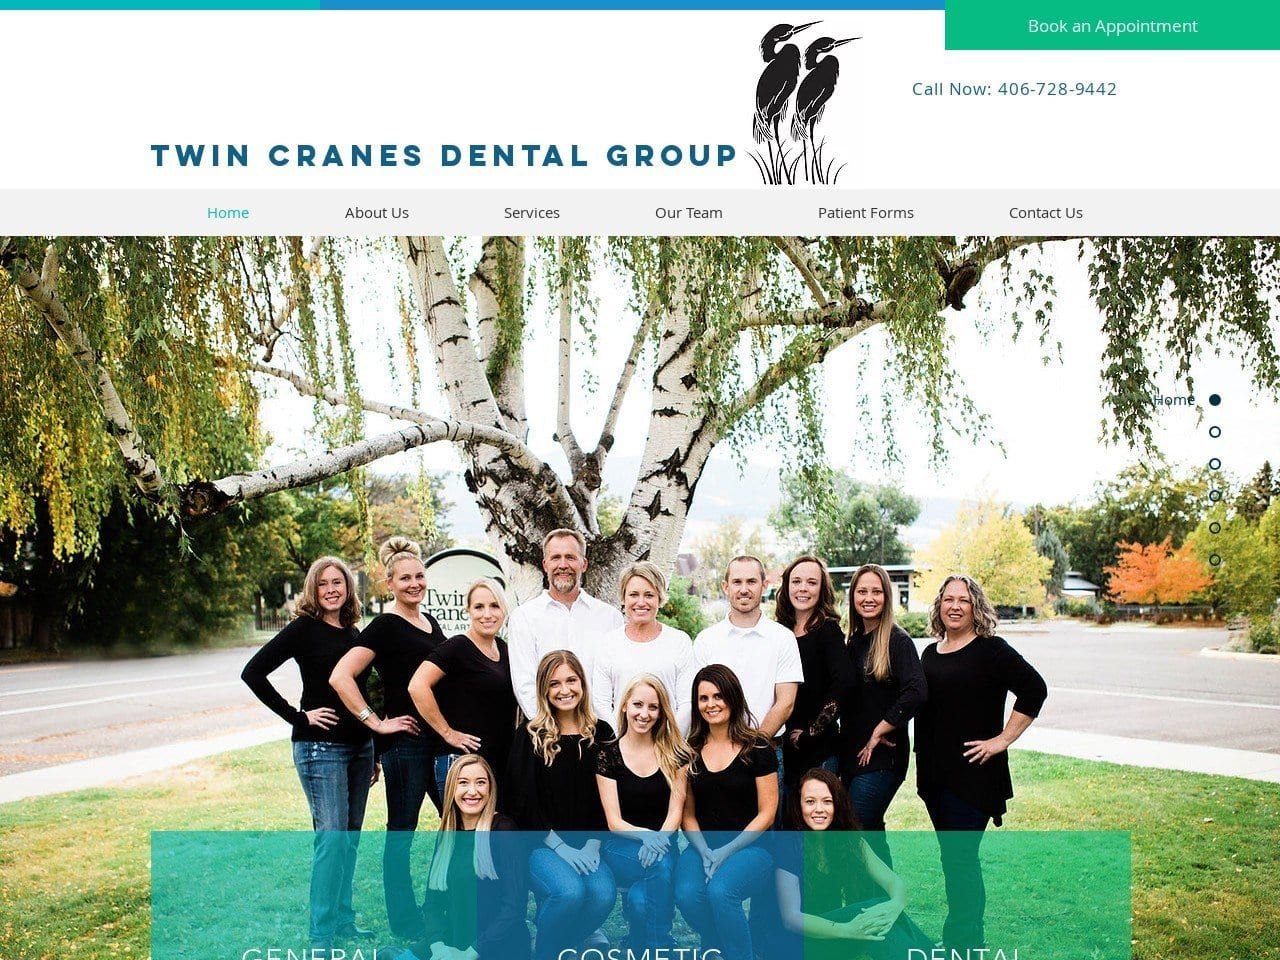 Twin Cranes Dental Group Website Screenshot from twincranesdental.com